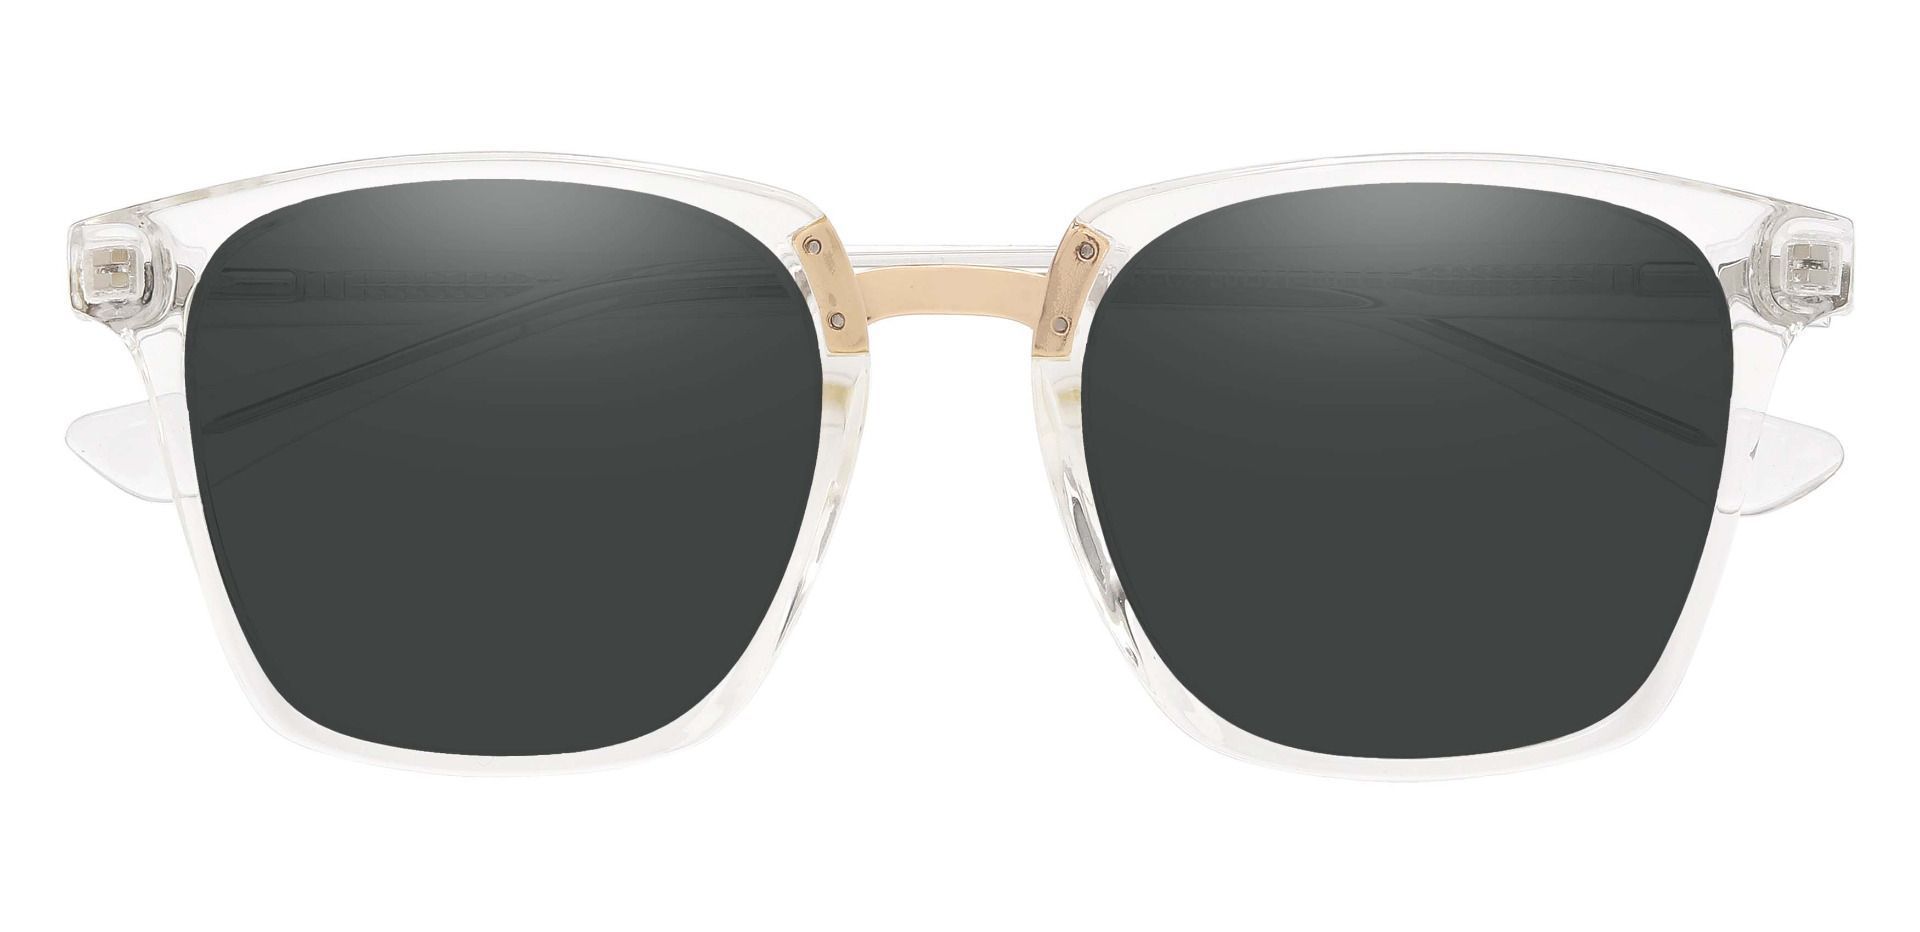 Delta Square Prescription Sunglasses - Clear Frame With Gray Lenses